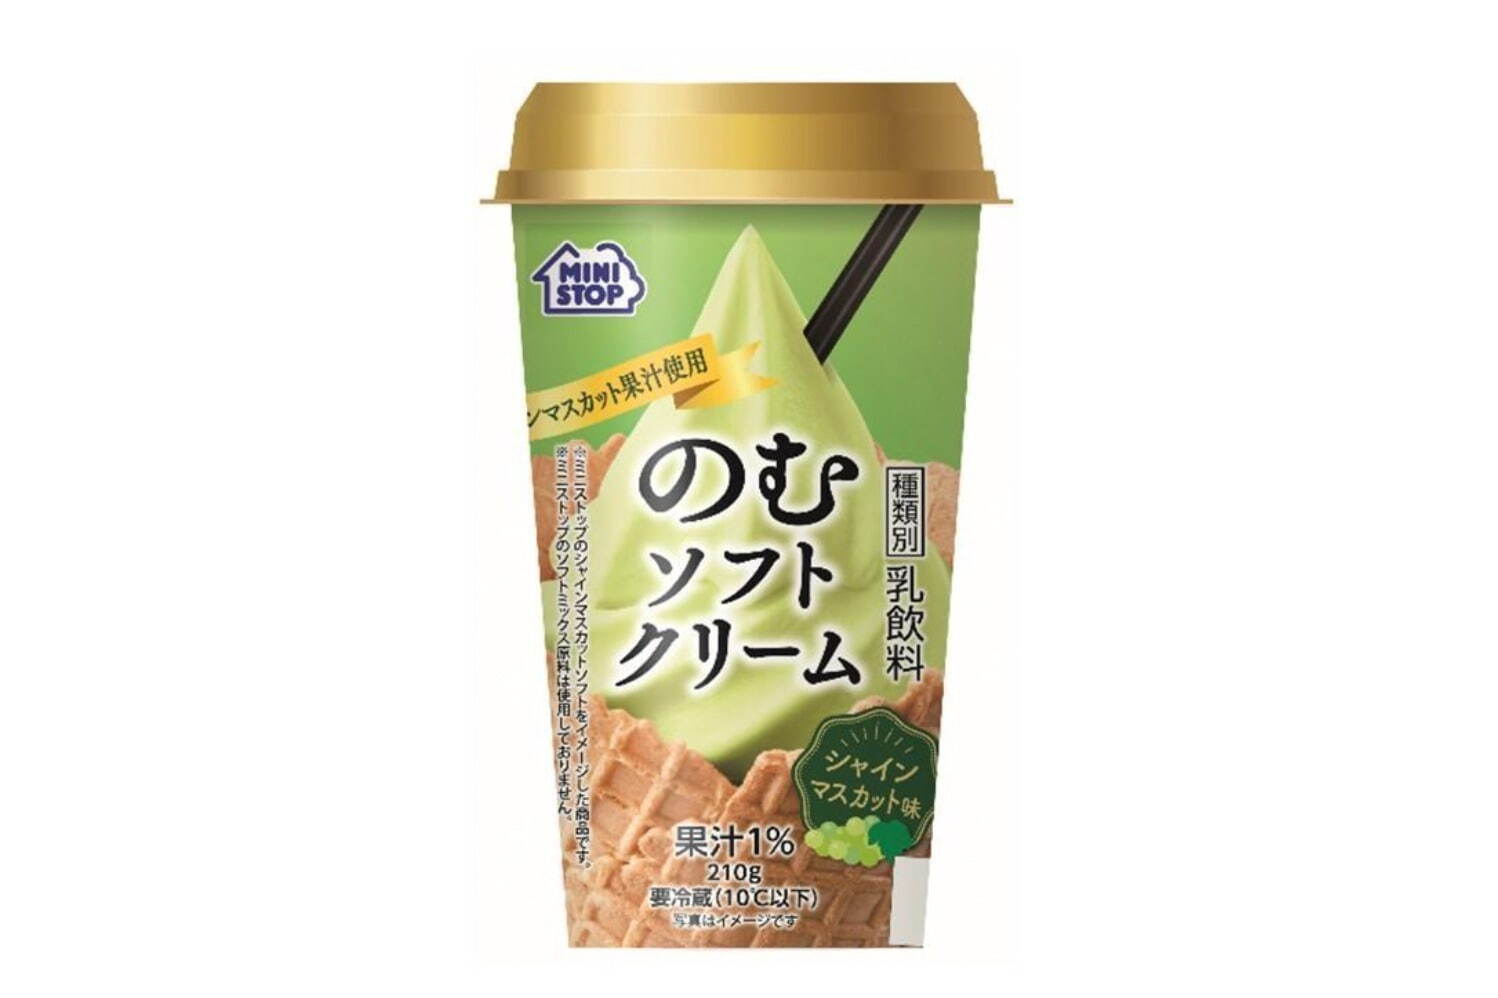 のむソフトクリーム シャインマスカット味 181円